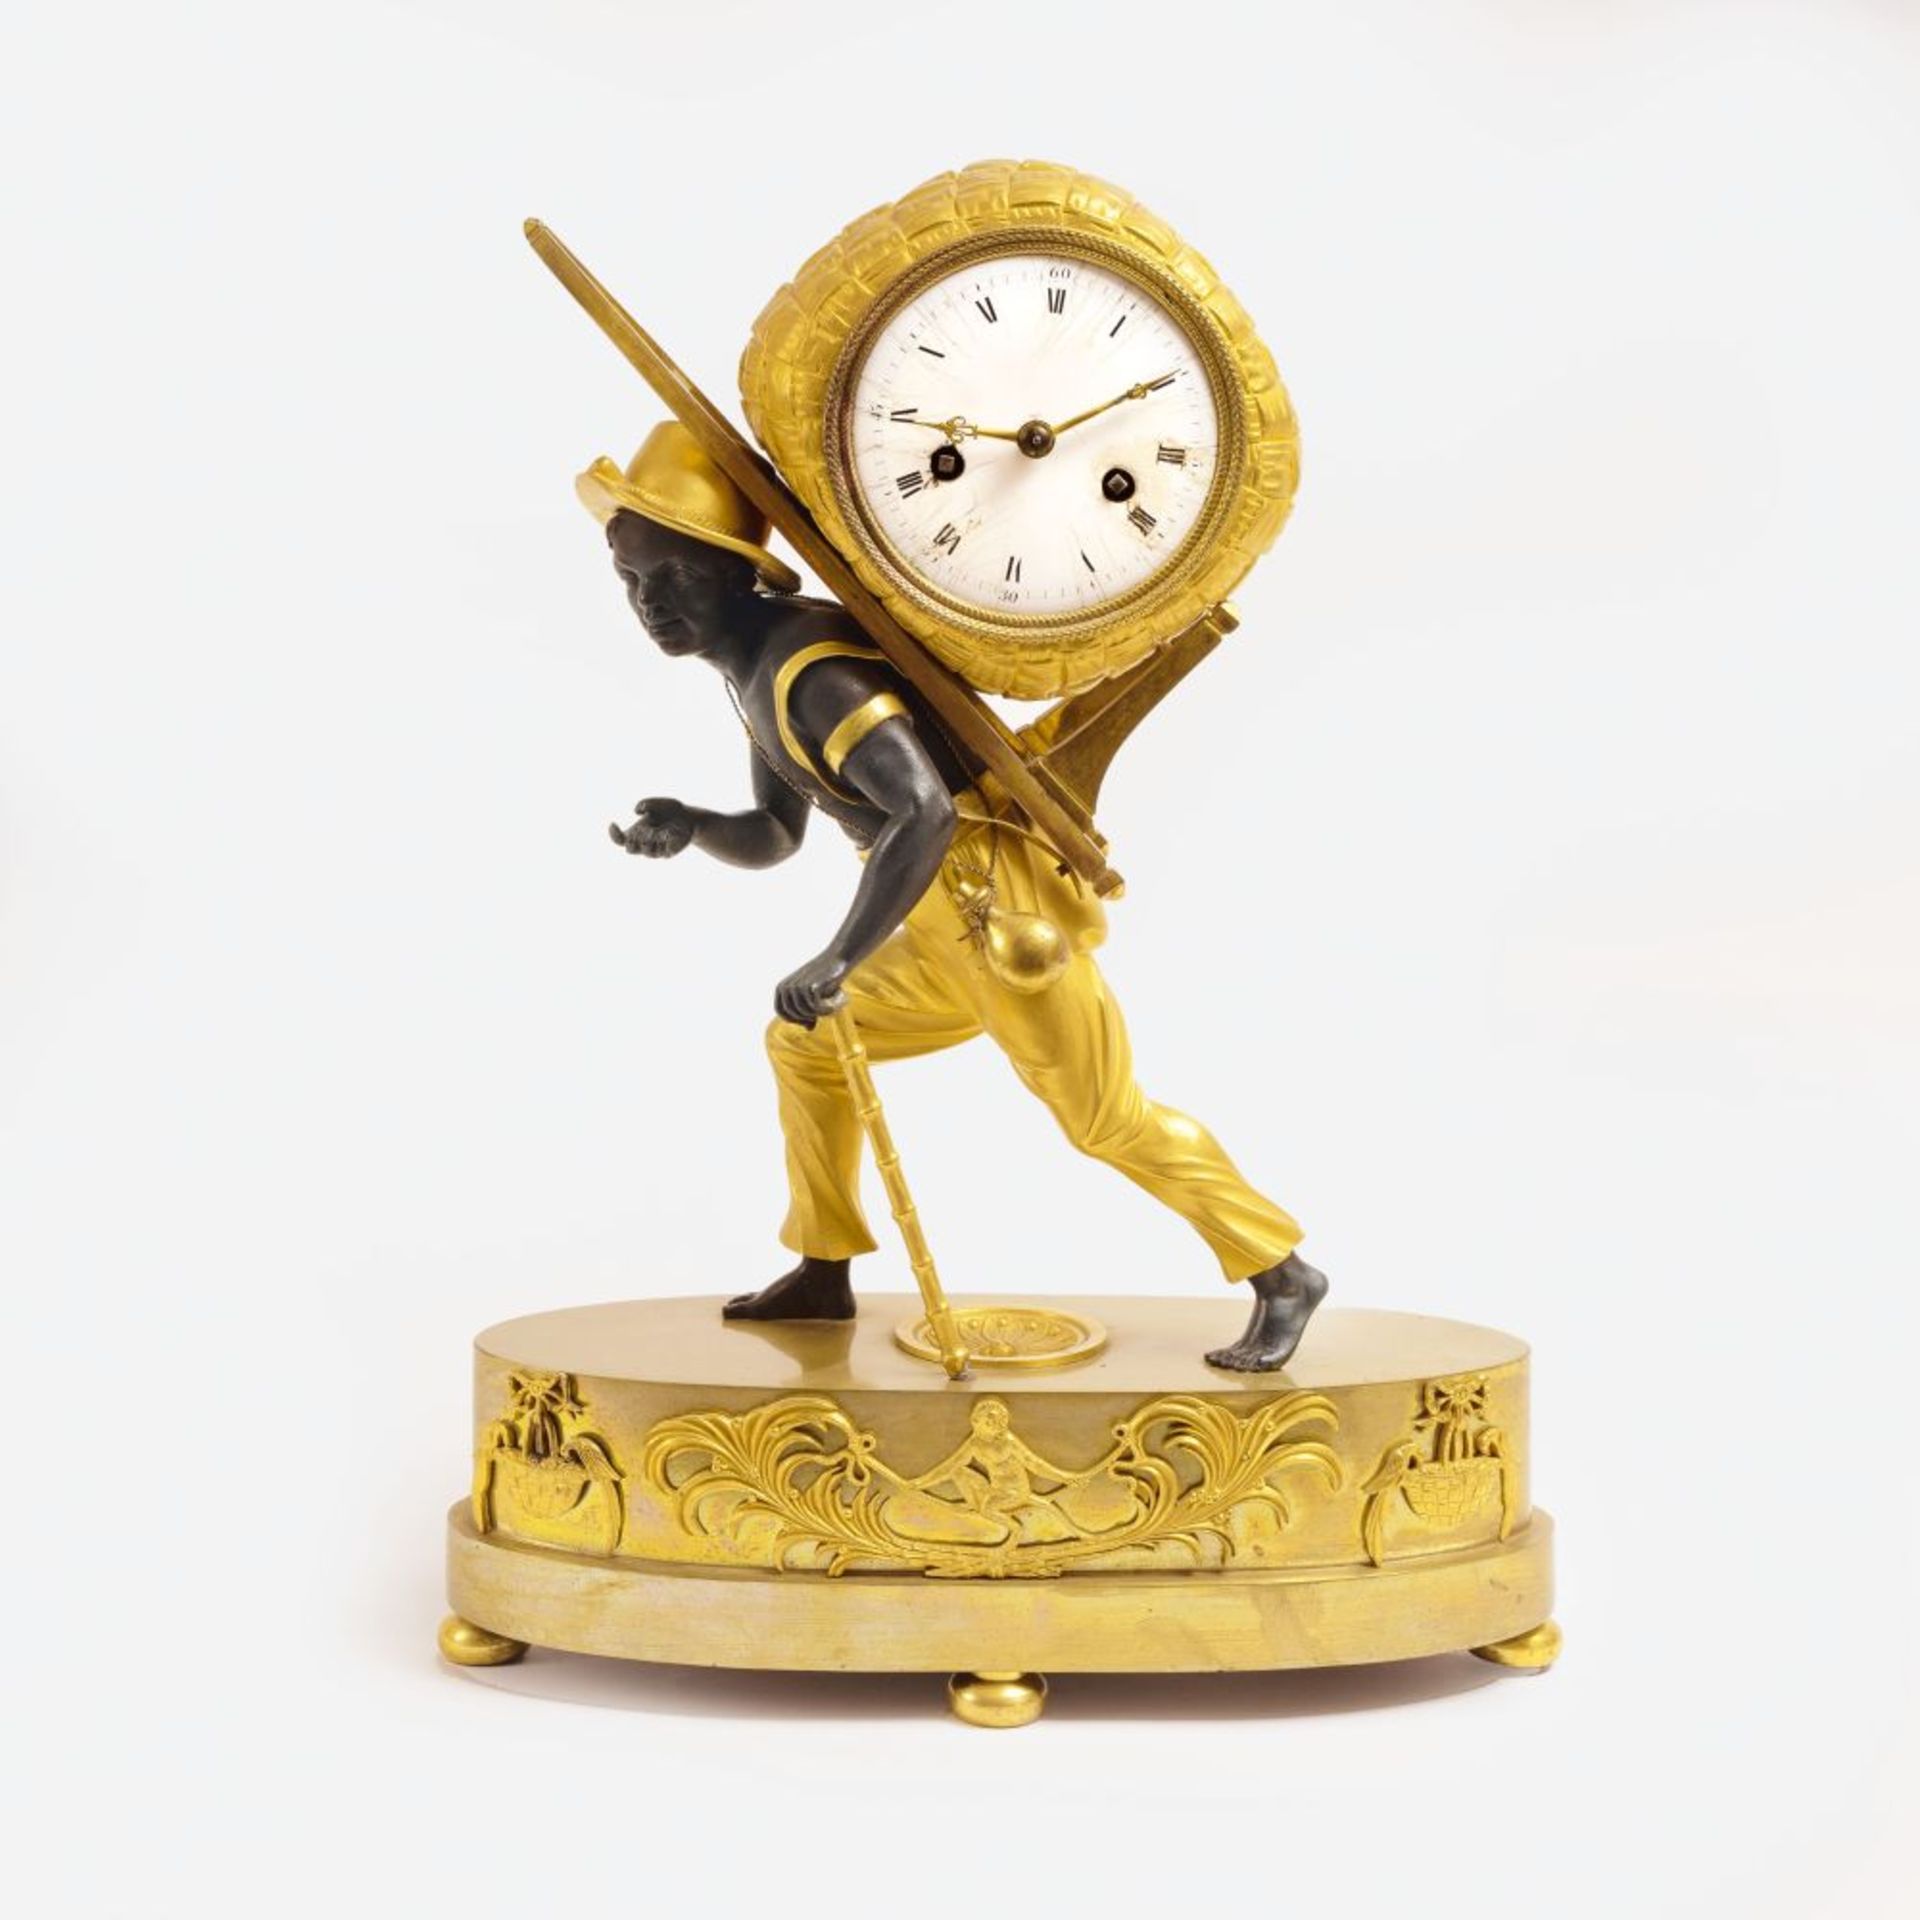 Reiche, Jean-André Bronzier, Paris, active 1752-1817, model. An Empire Pendulum 'Portefaix'.